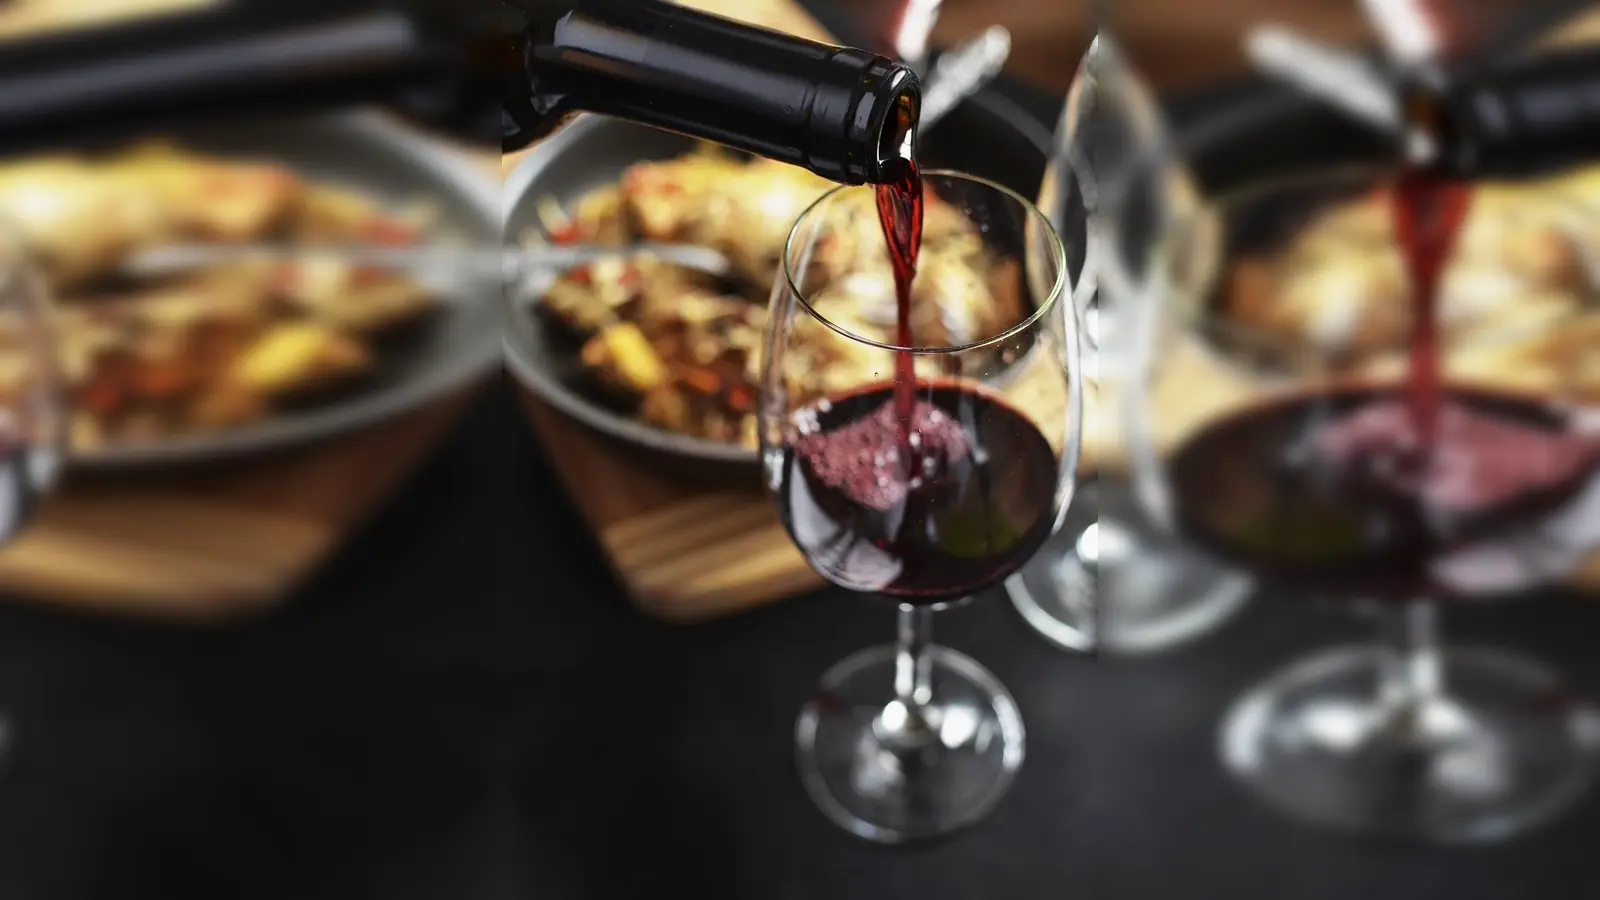 <b>Ein Gläschen Wein</b> zum Essen, das gehört für viele zu einer guten Lebensart dazu. Eine 40-jährige Frau aus München erlitt Anfang April schwere Verätzungen in der Speiseröhre, nachdem sie in einem Lokal Wein getrunken hatte. (Foto: pixabay)